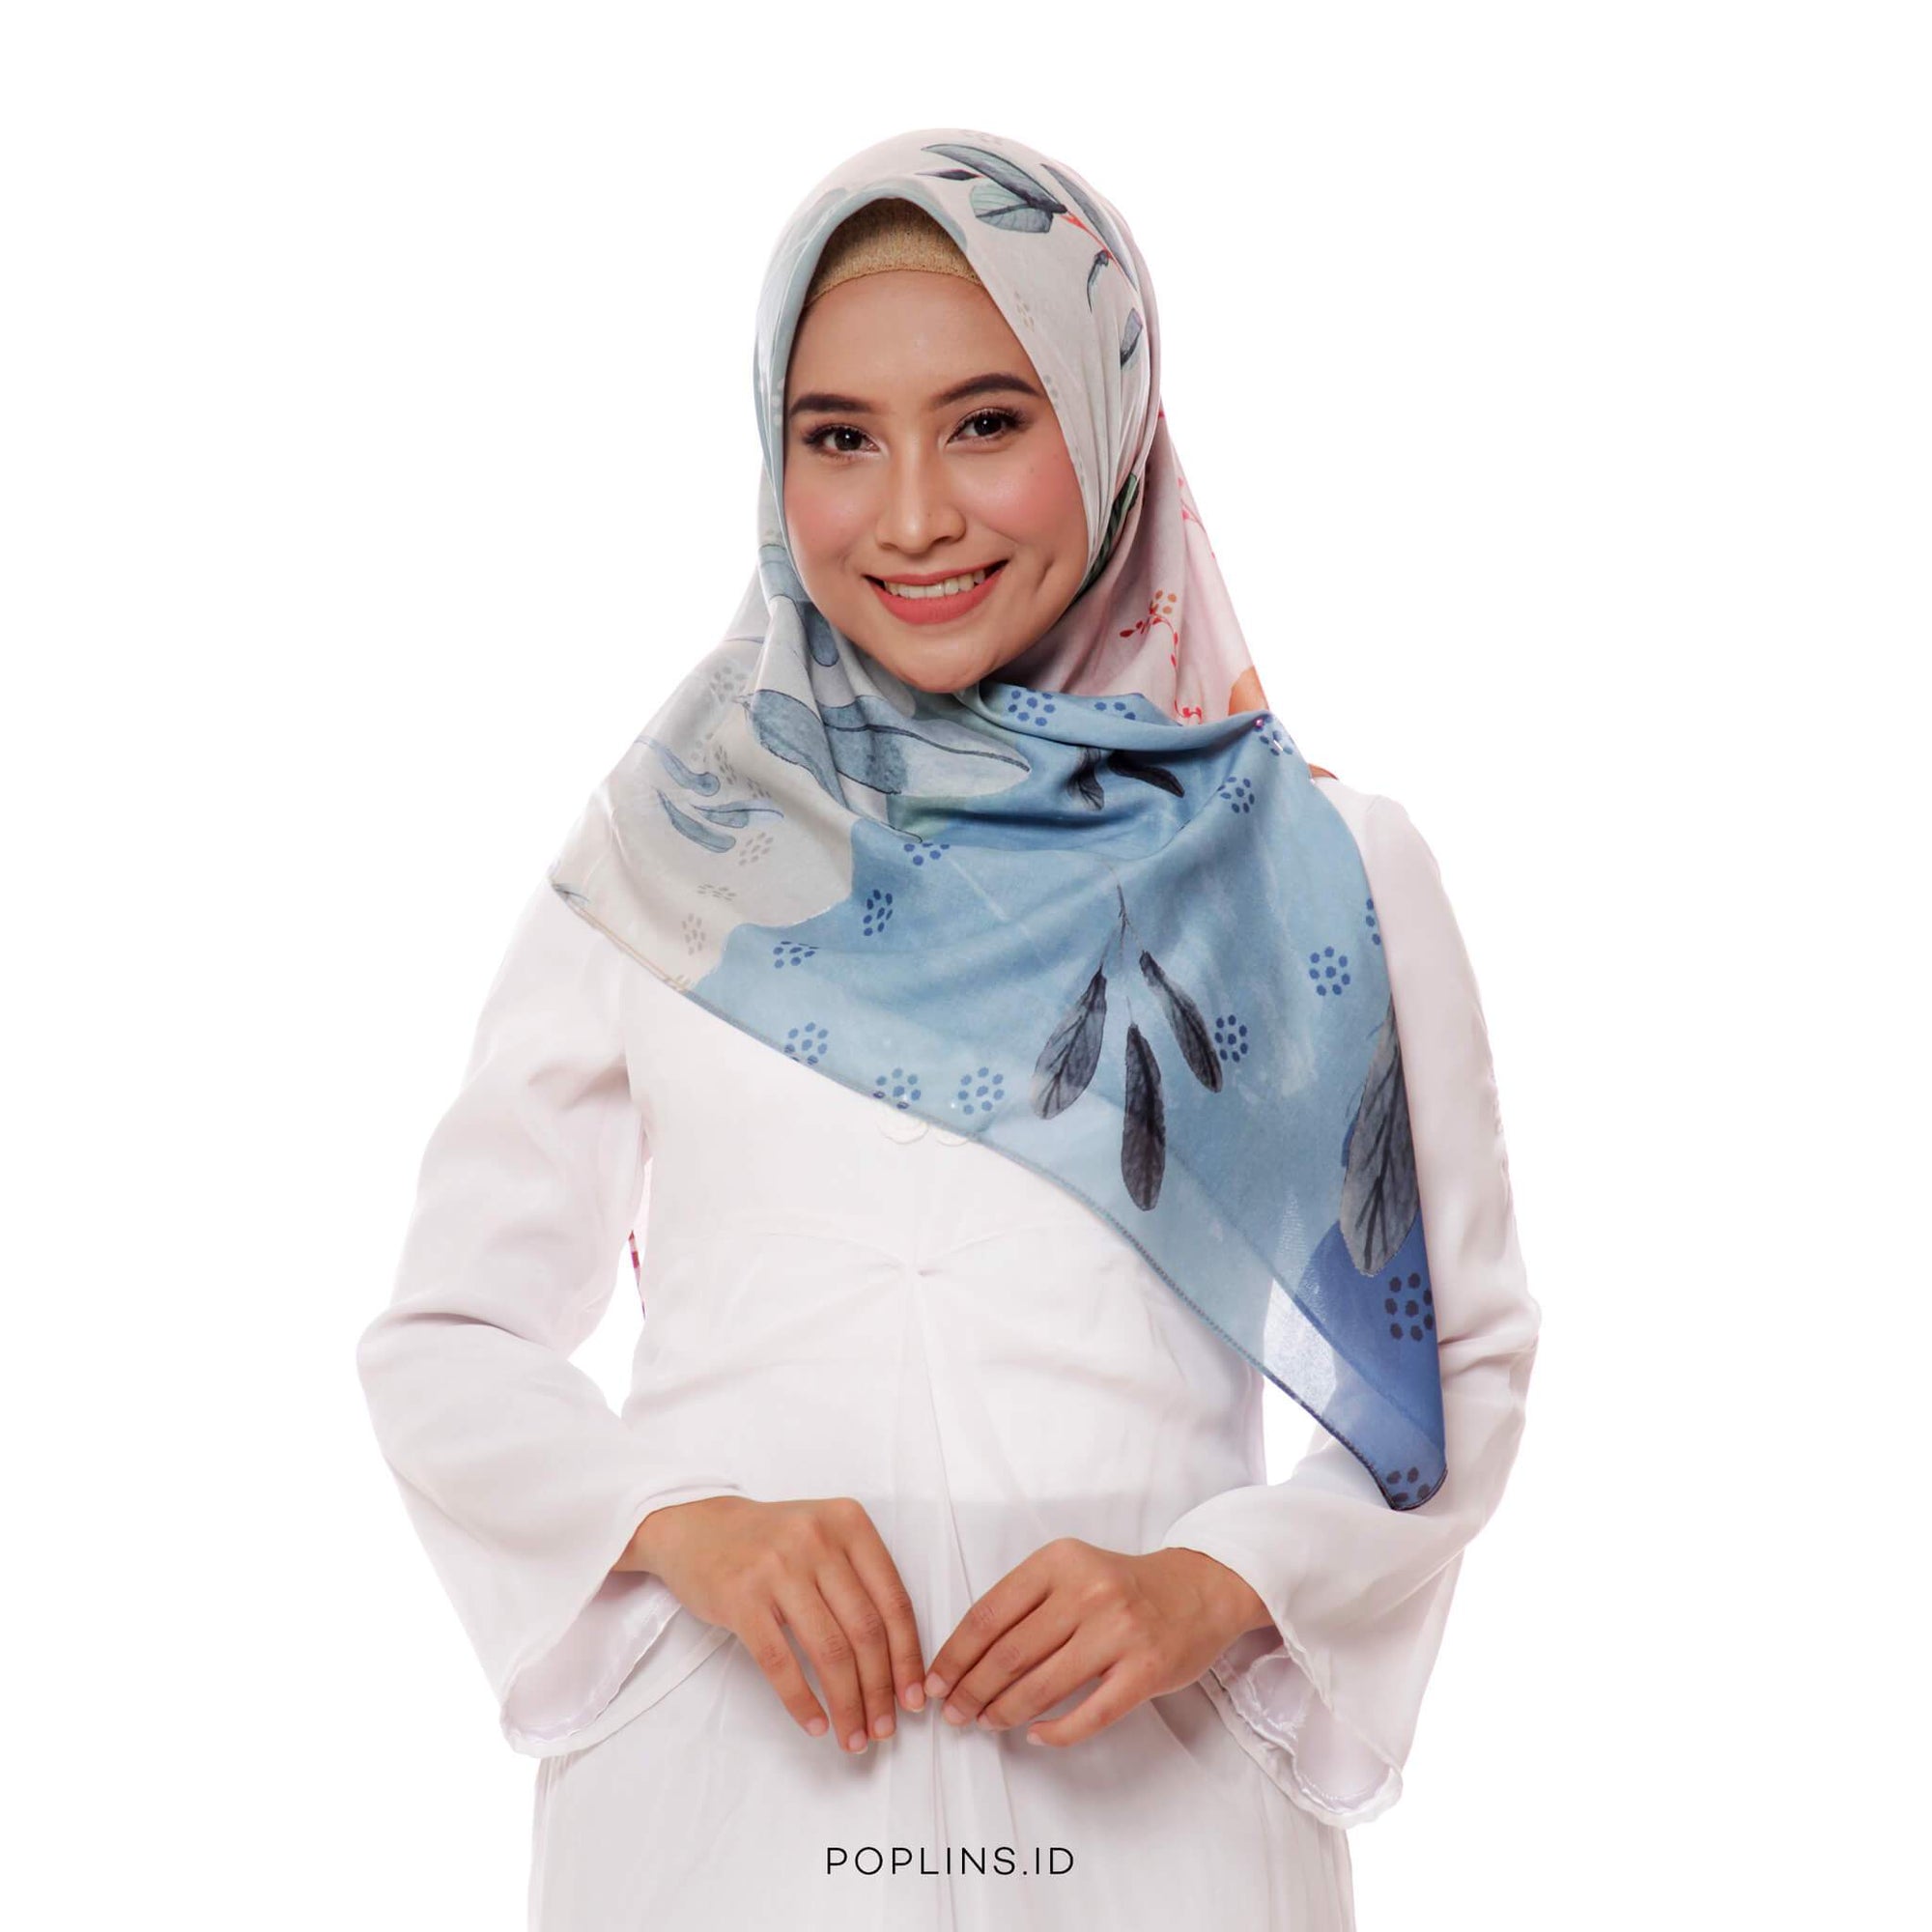 Poplins Sekar - Beautiful Hijab Styles